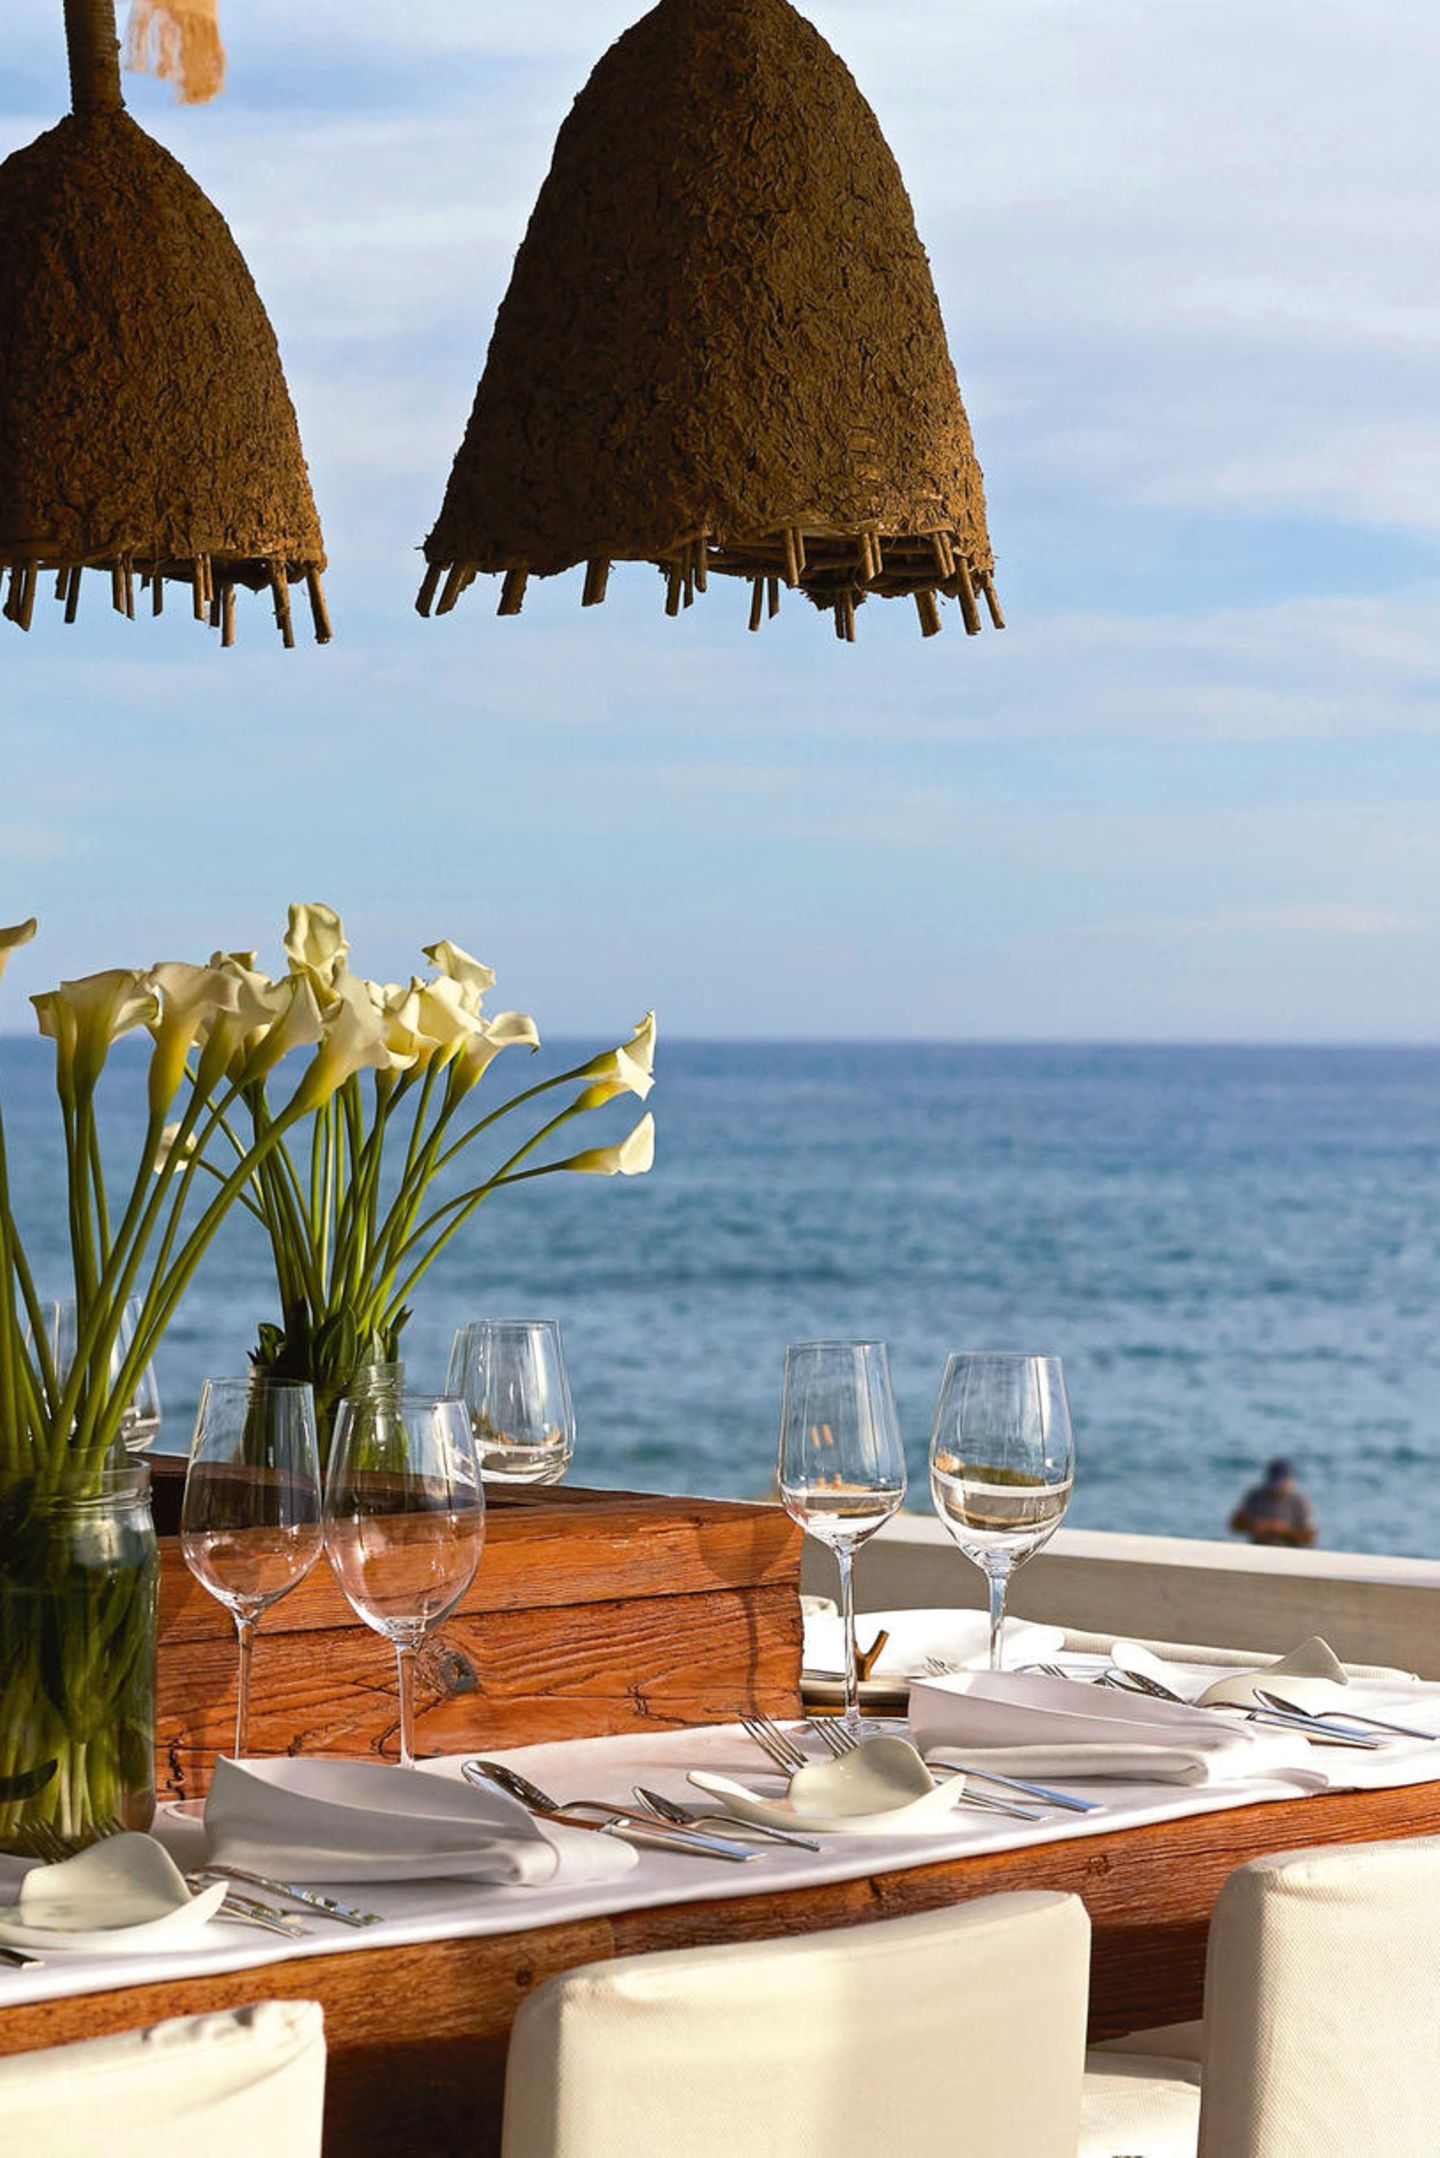 Atlantik im Blick: Das mit zwei Michelin-Sternen ausgezeichnete Restaurant "Vila Joya Sea" gehört zu Portugals besten Adressen. Am Abend wird es romantisch, wenn die vielen kleinen Windlichter auf den Felsen vor dem Restaurant leuchten. Dann schimmern die Klippen mit dem Meer um die Wette. "Vila Joya Sea", im Hotel "Vila Joya", Estrada da Galé, Albufeira/ Portugal